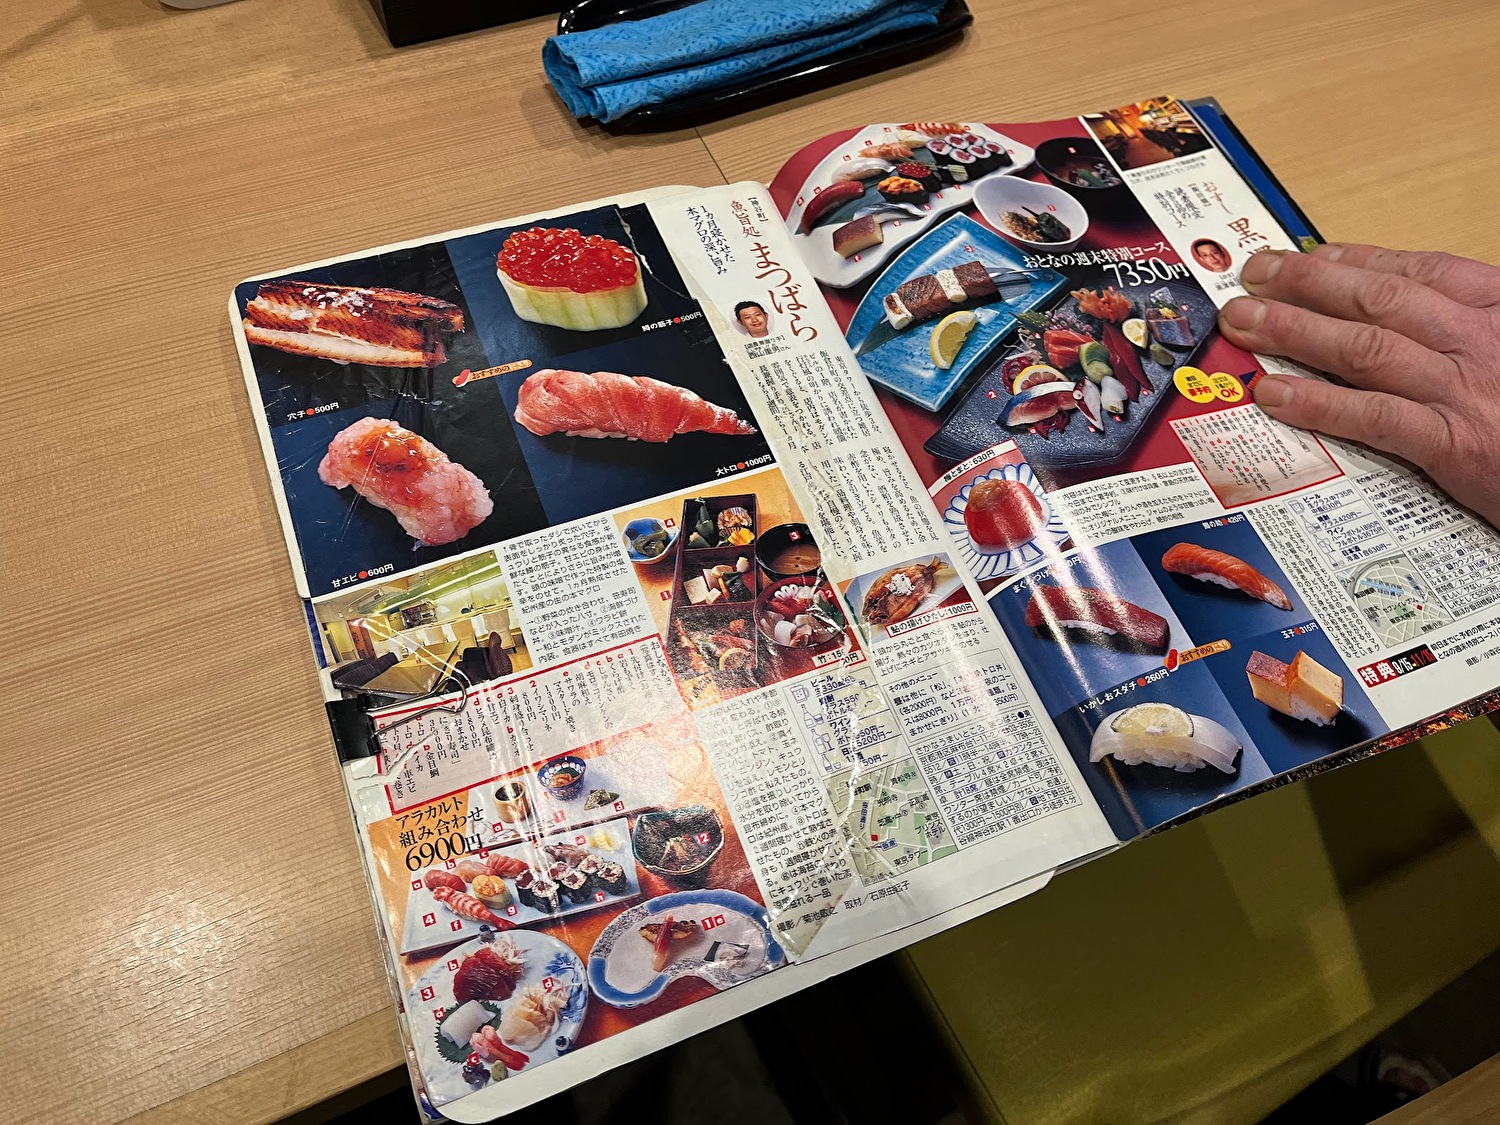 お寿司屋さん時代の取材記事。